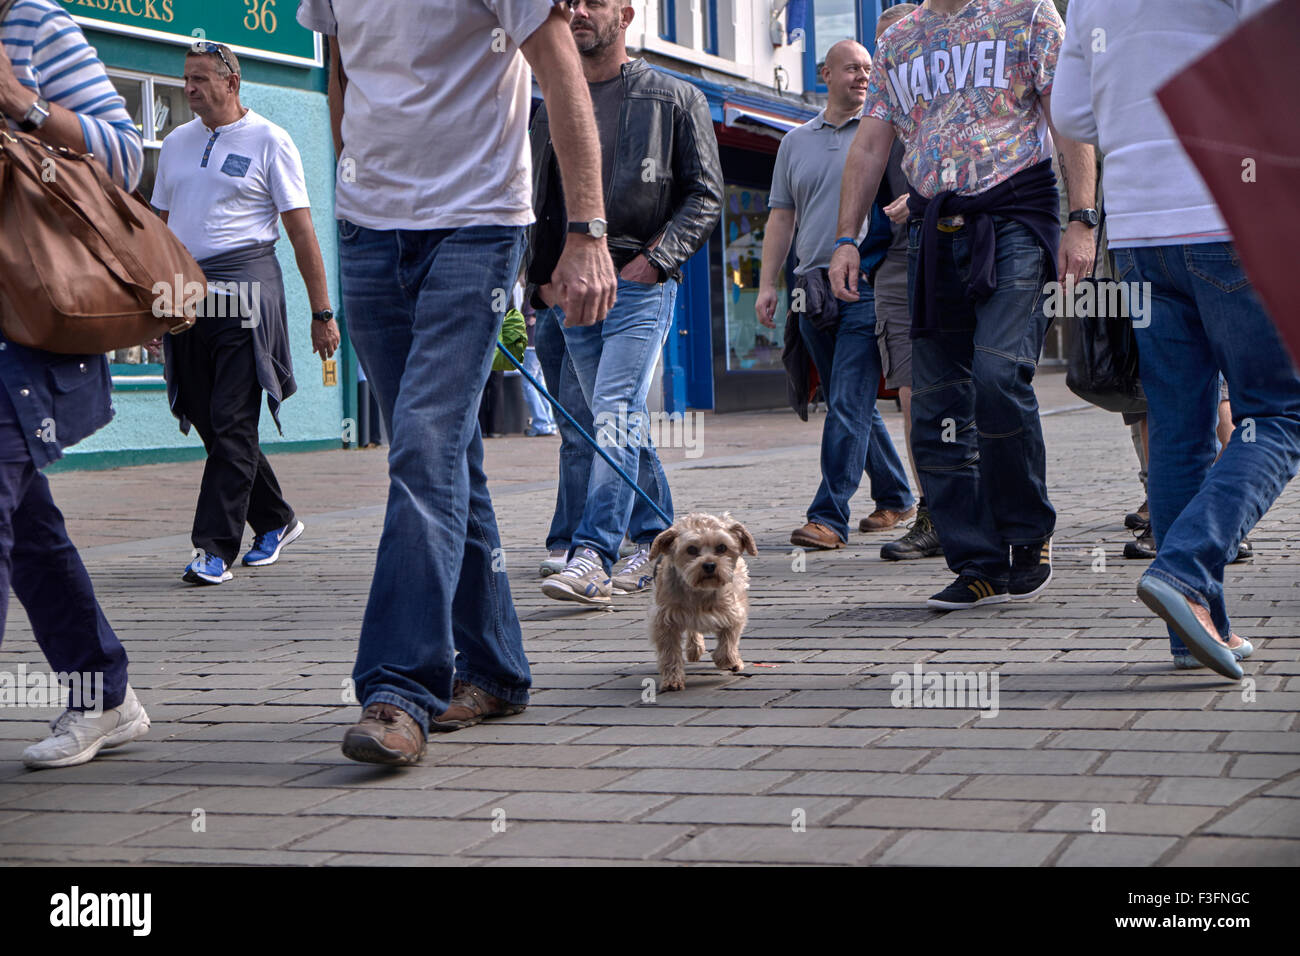 Marcheur de chien. Marcher un petit chien de terrier parmi une foule de clients. Angleterre Royaume-Uni Banque D'Images